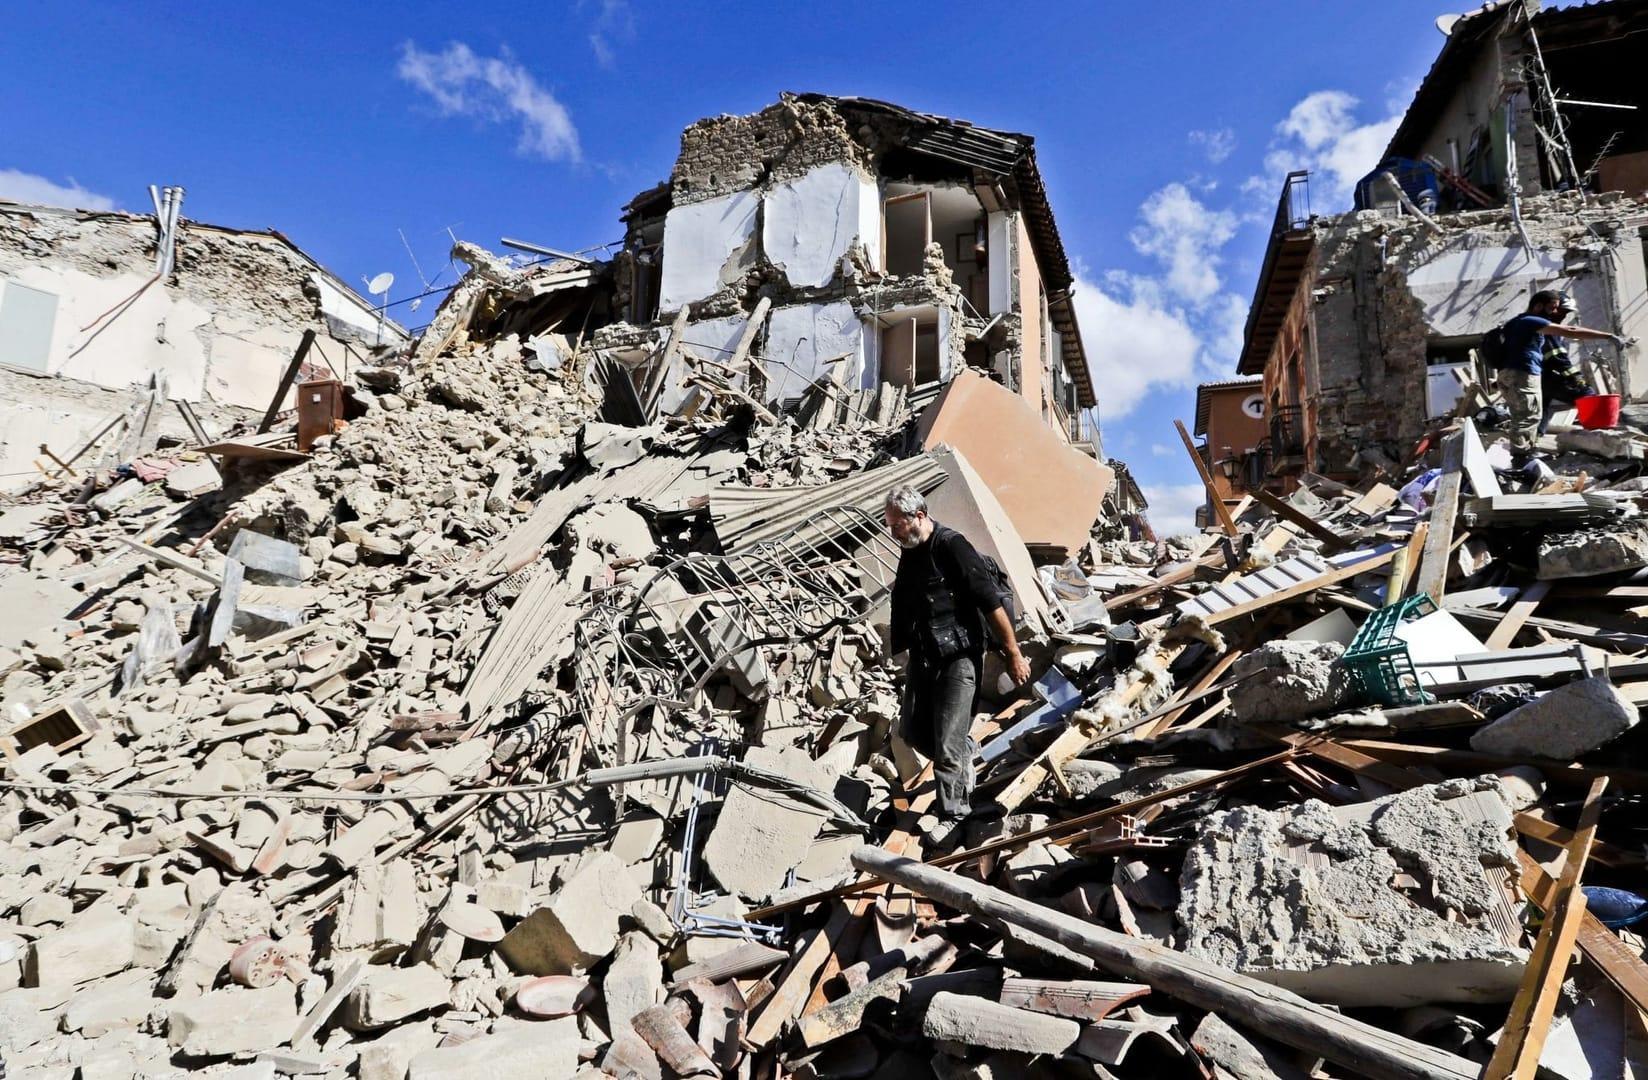 Vatican sends rescue team to Italian quake zone